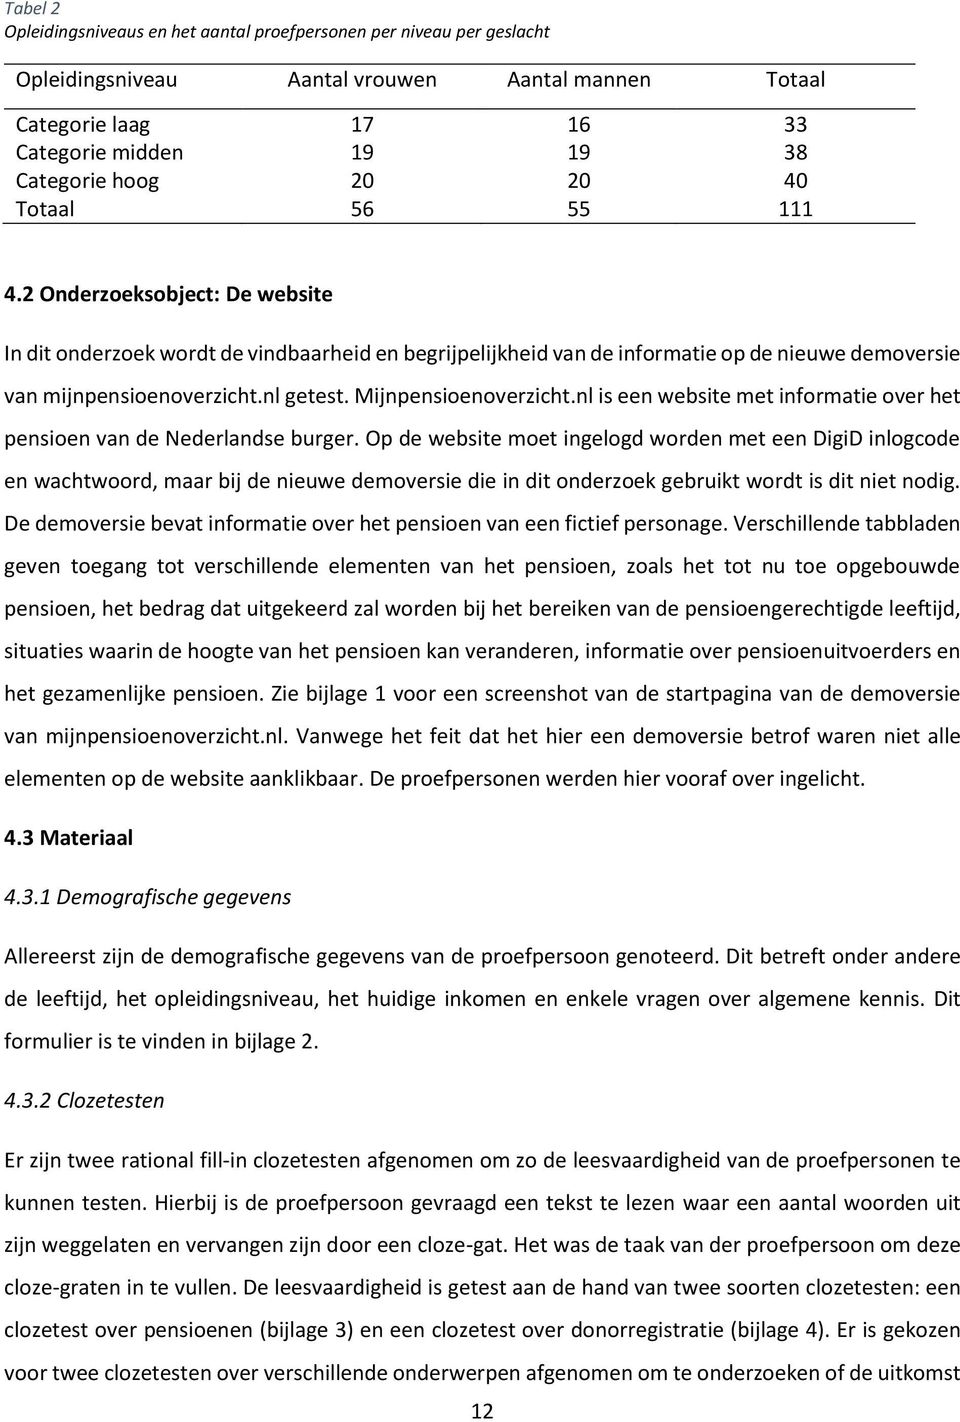 Mijnpensioenoverzicht.nl is een website met informatie over het pensioen van de Nederlandse burger.